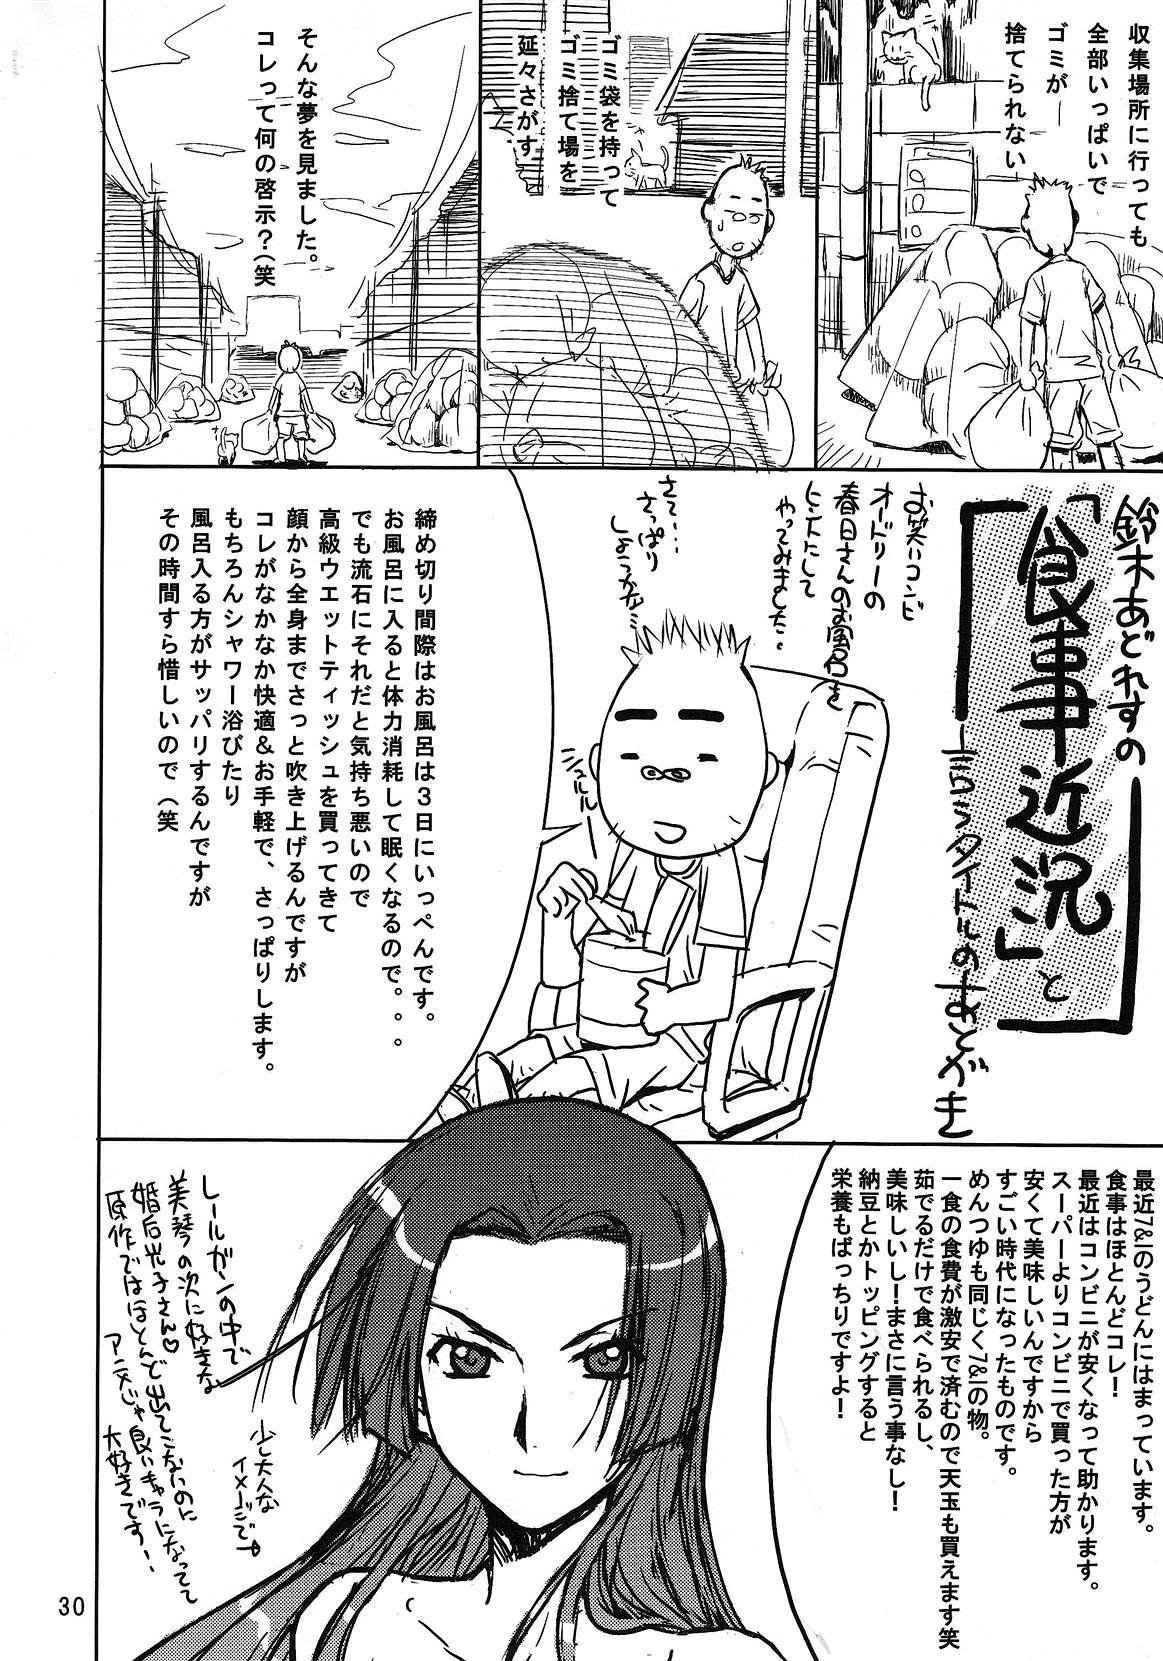 Touma x Misaka's Moe Doujinshi Page 28 Of 33 toaru kagaku no railg...